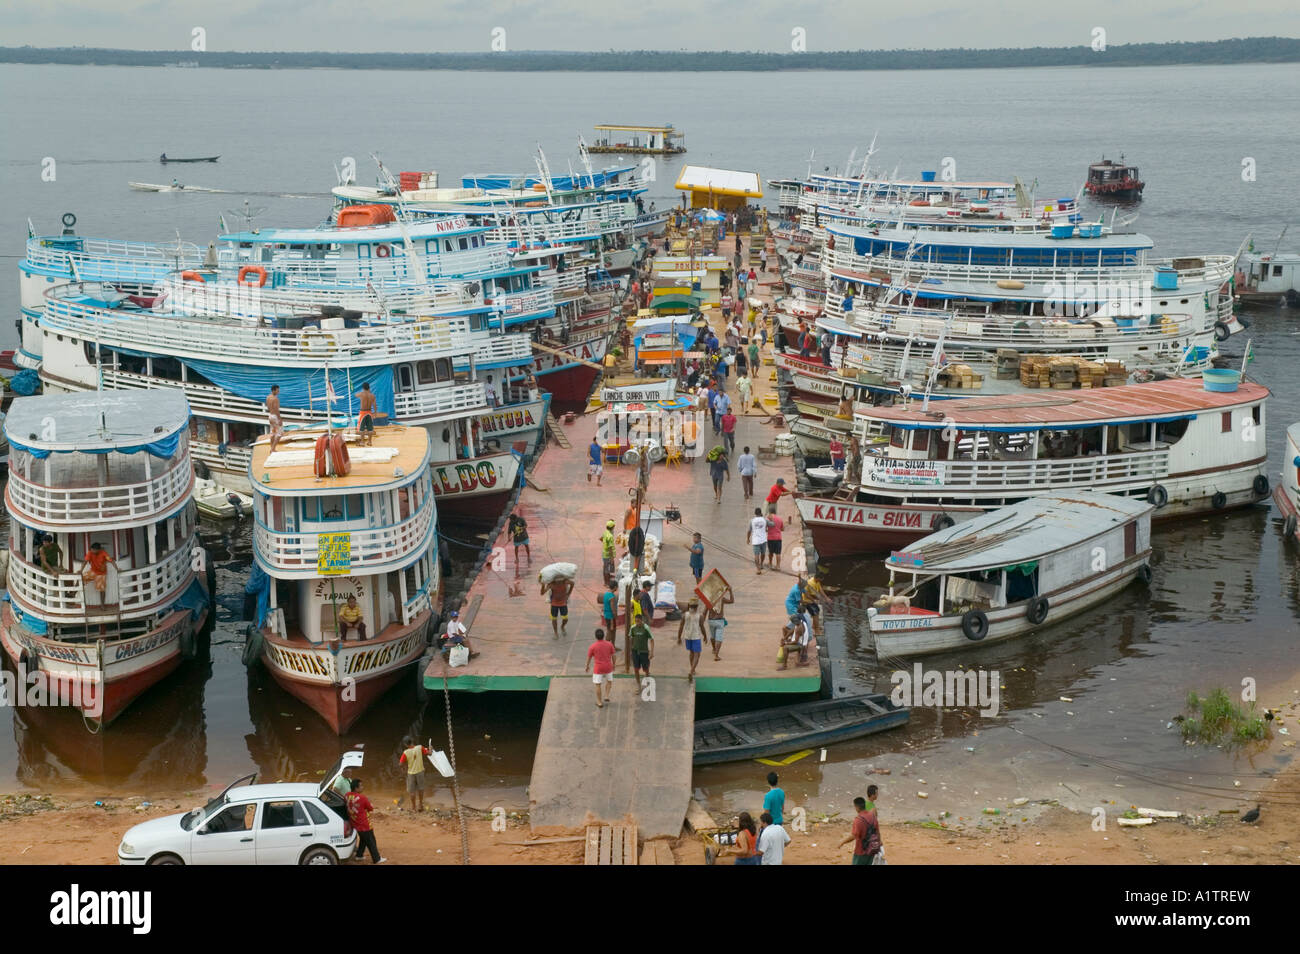 Fähren in der Amazon-Hafen von Manaus Amazonas Brasilien Stockfotografie -  Alamy